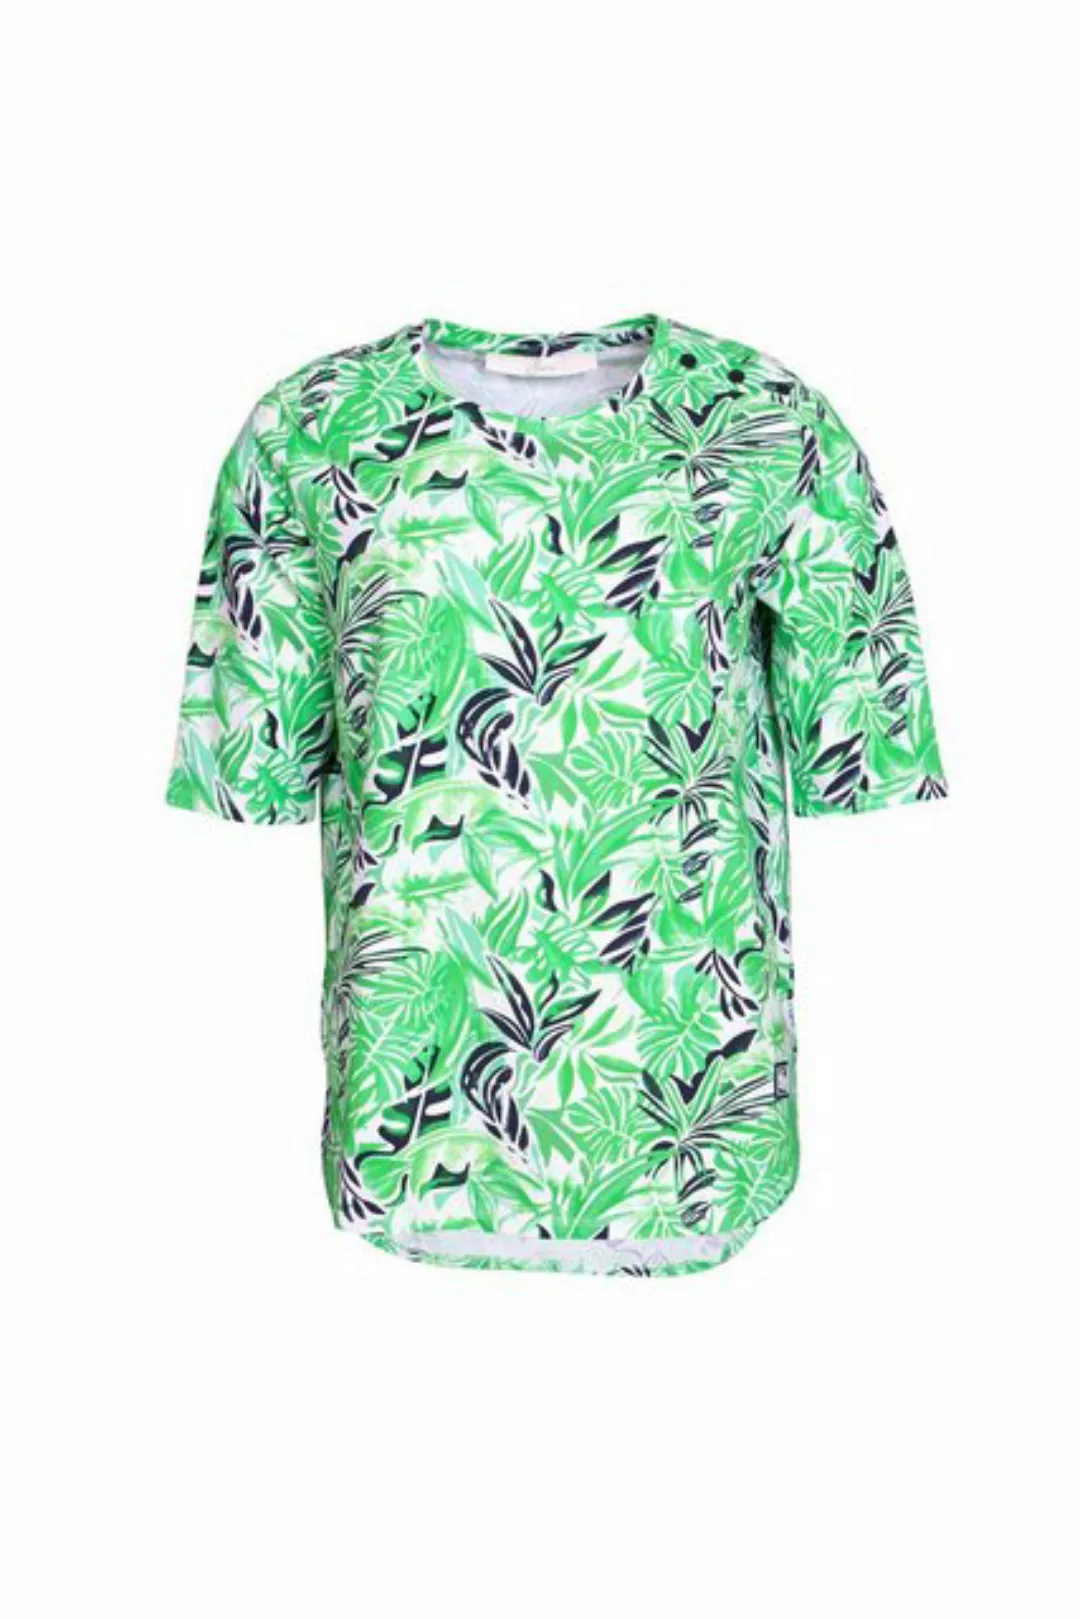 SER T-Shirt Shirt, Tropical Print W4240107 auch in großen Größen günstig online kaufen